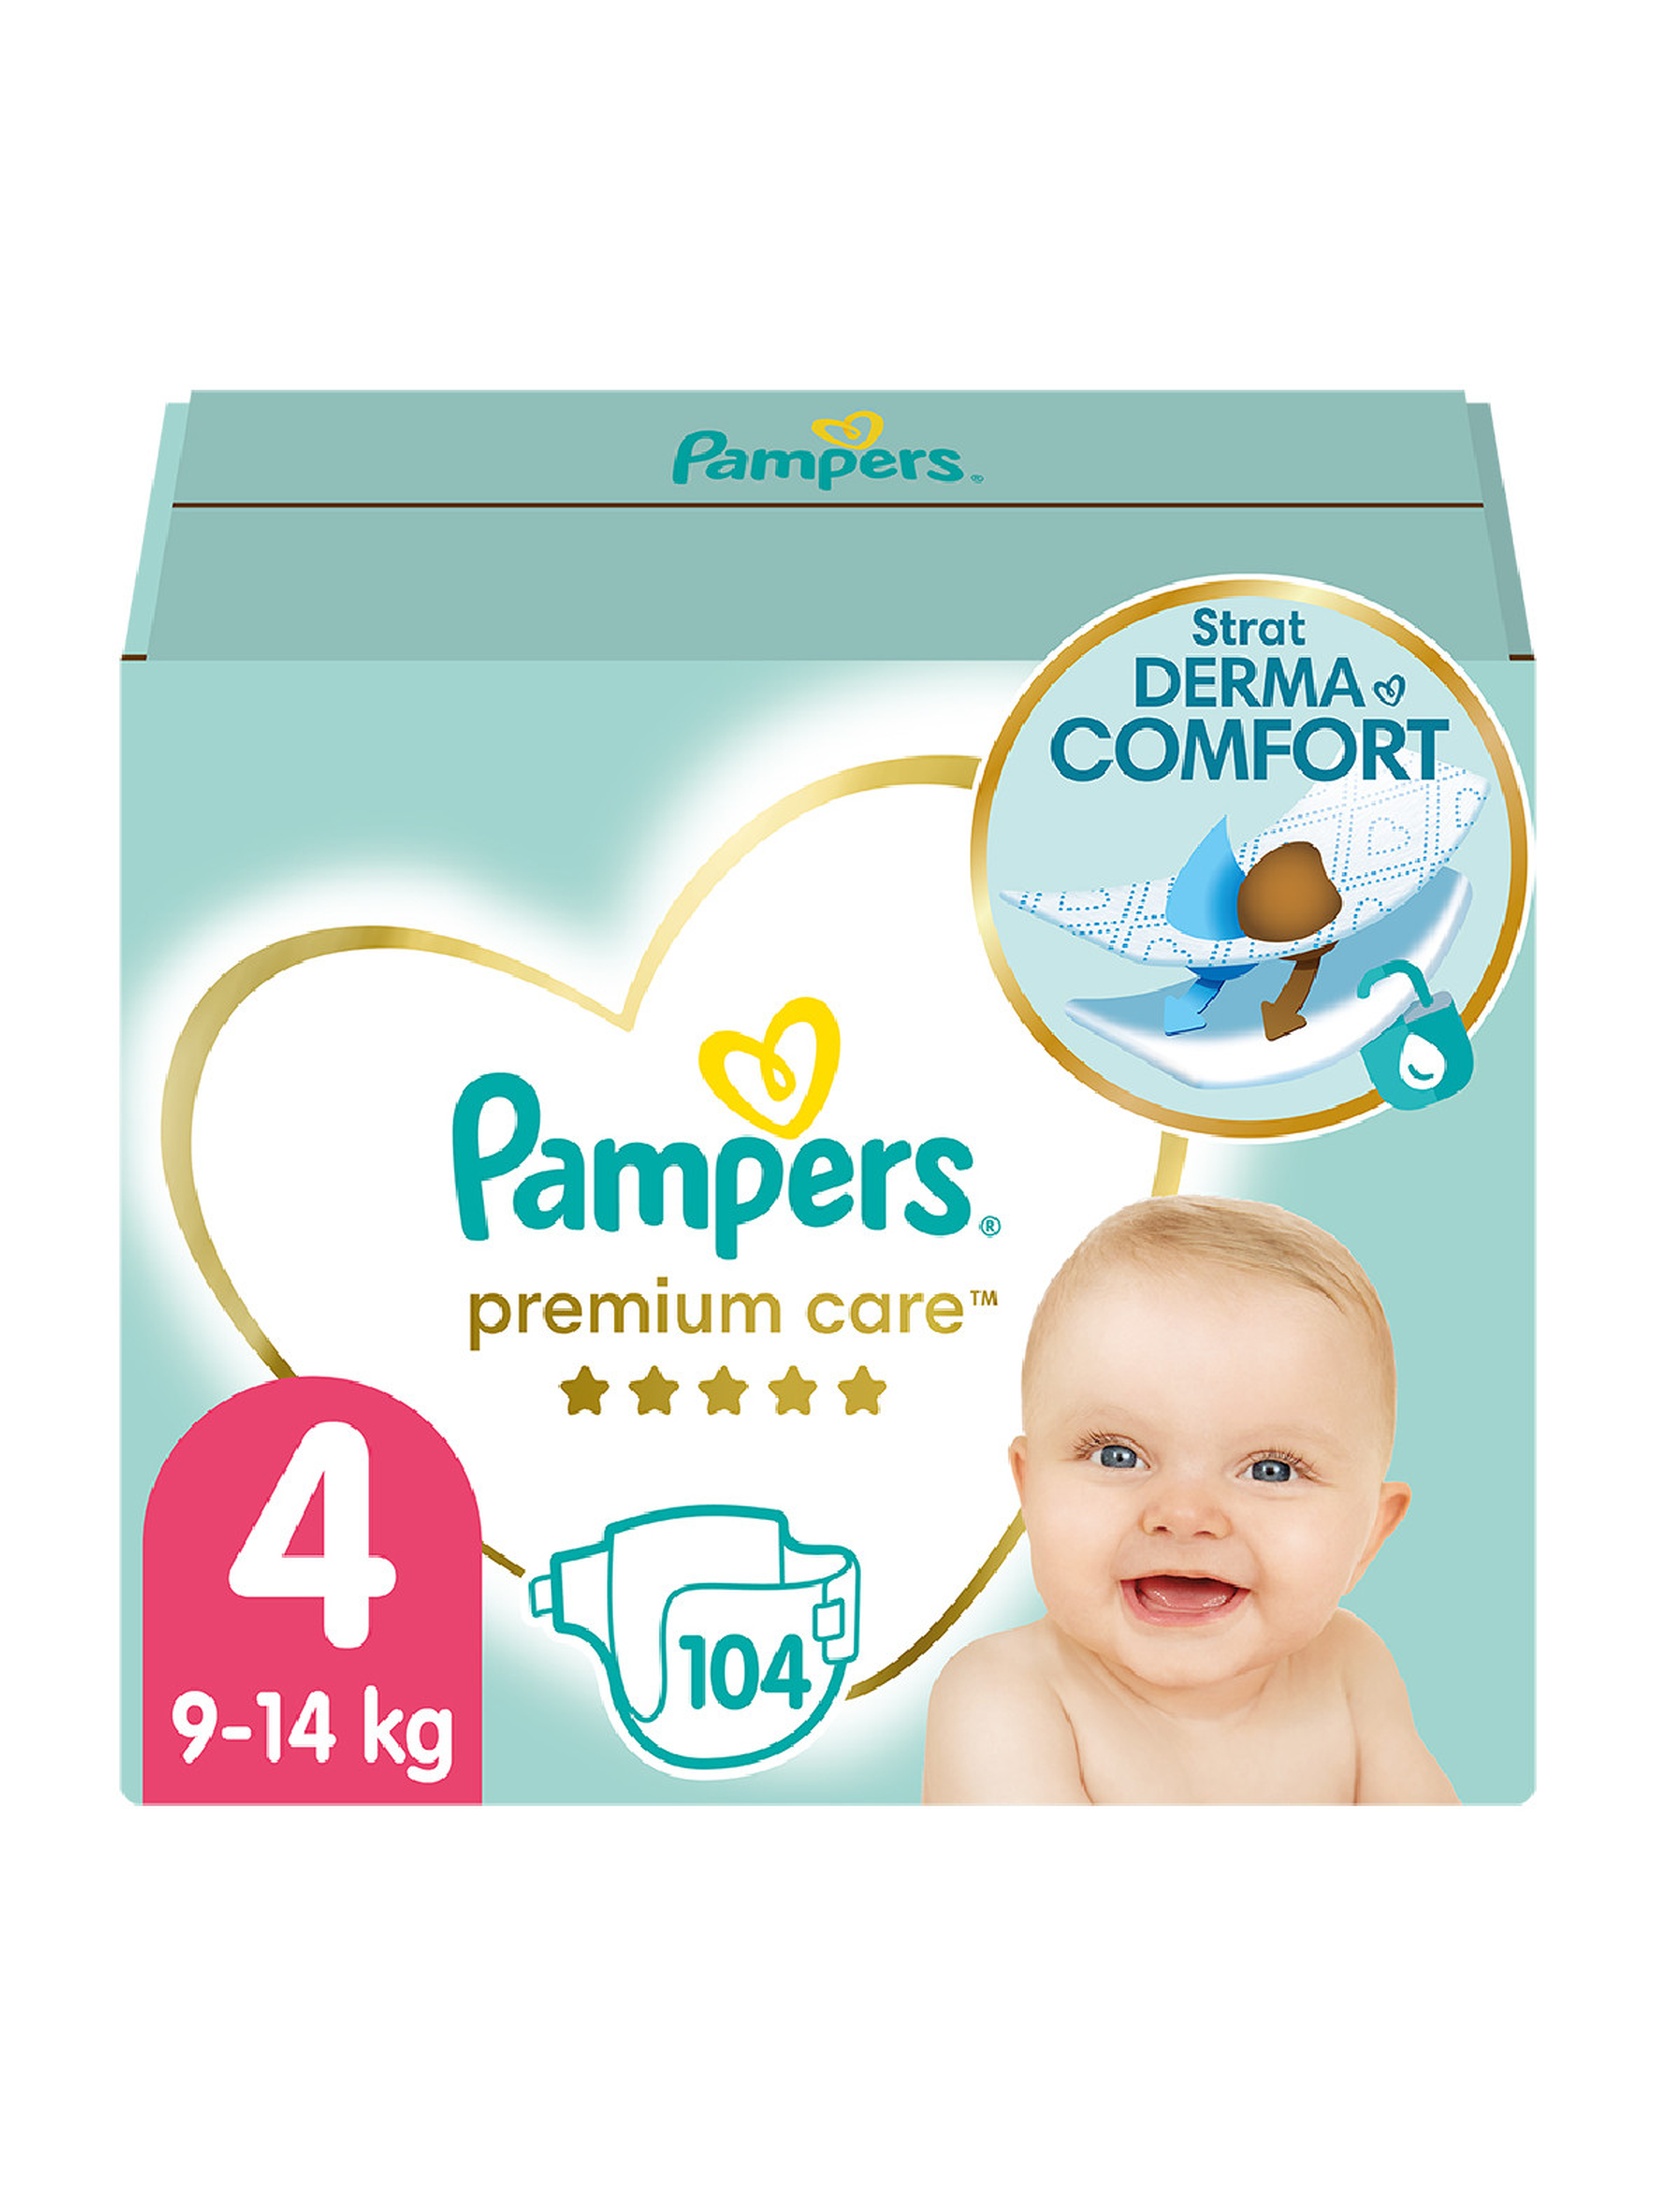 Pampers Premium Care Box rozmiar 4, 104 pieluszki 9-14kg